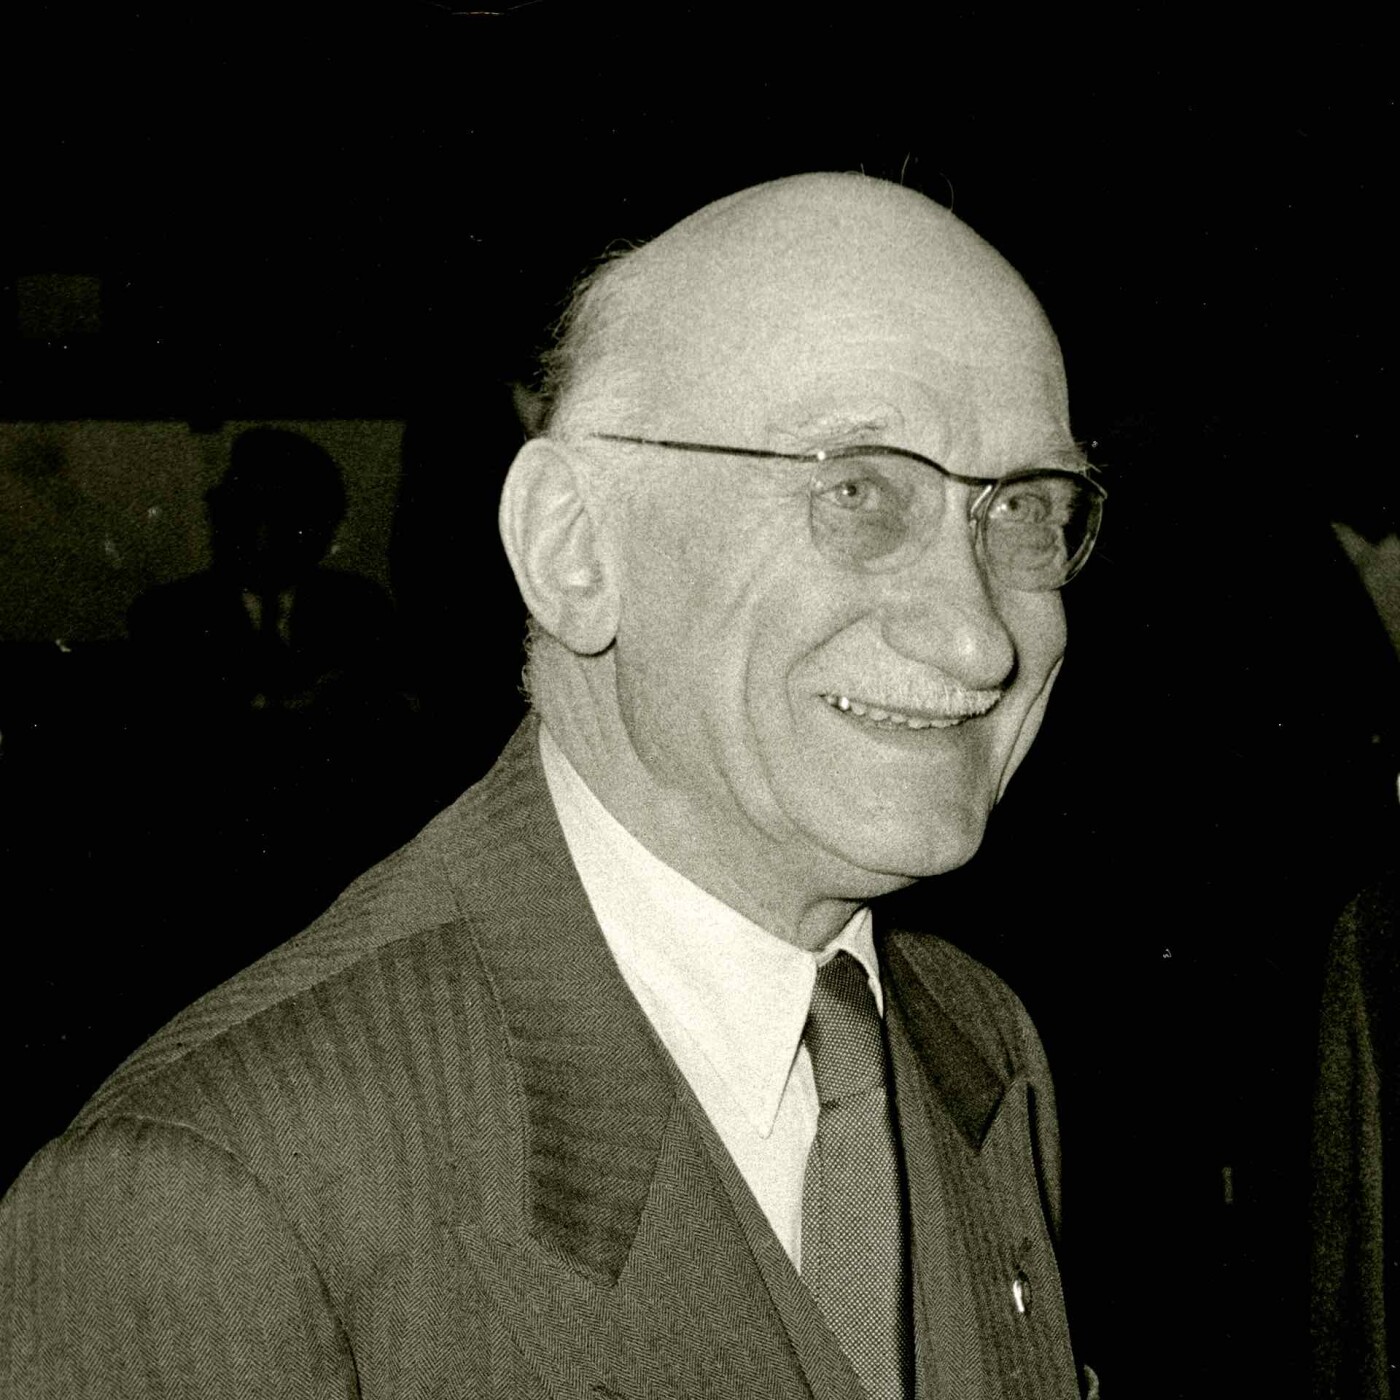 Biography of Robert Schuman